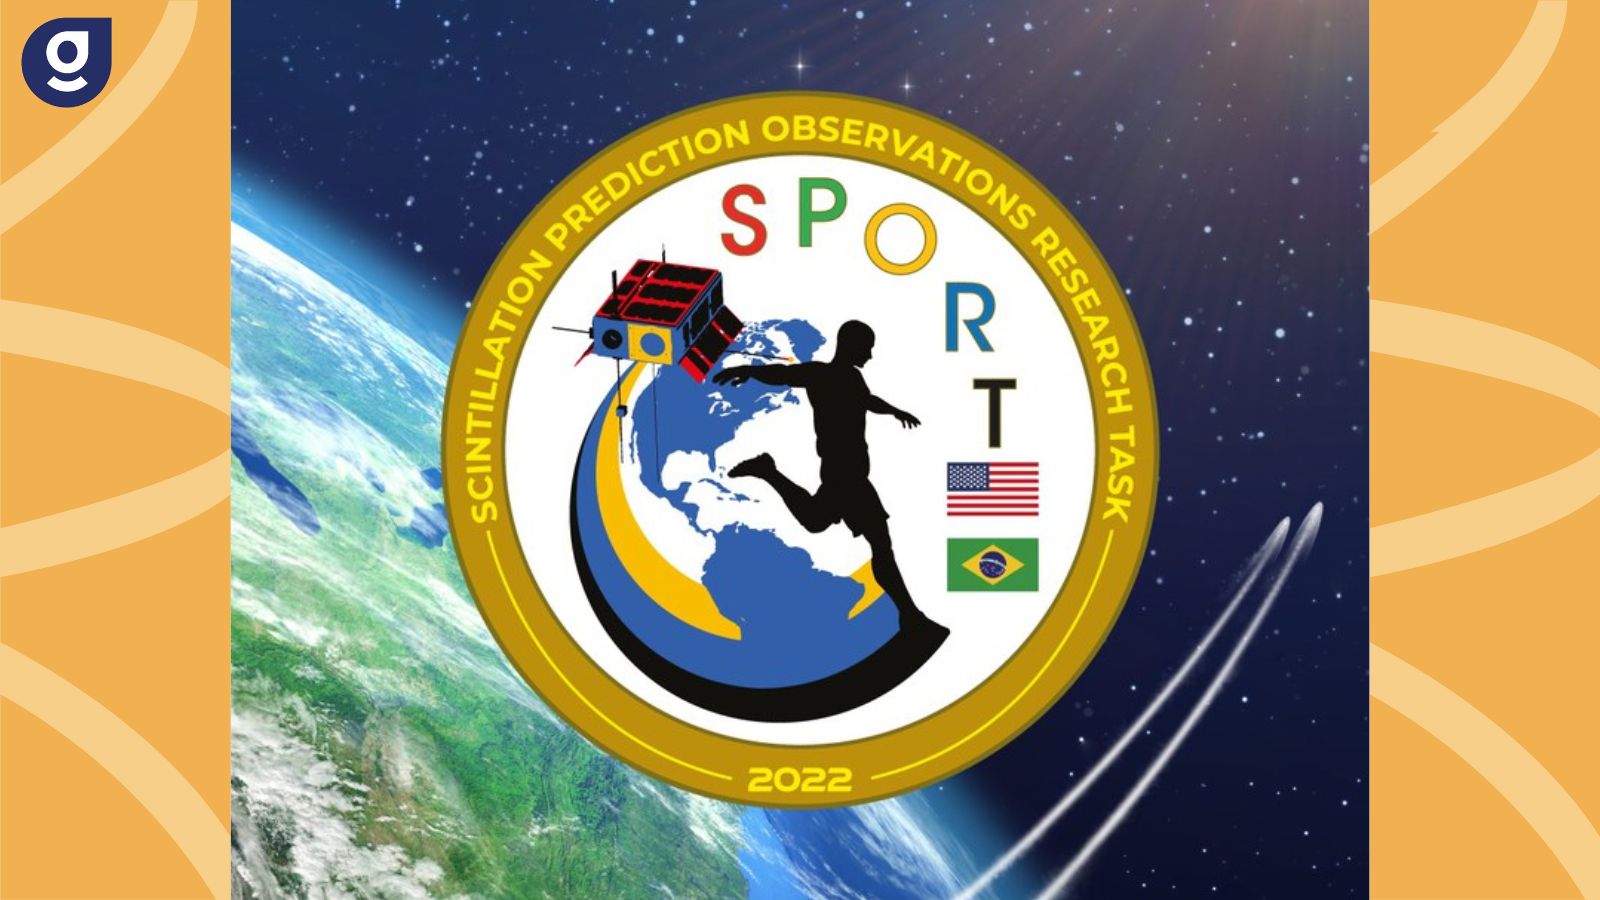 Parceria entre AEB e NASA, SPORT será lançado nesta terça SPORT